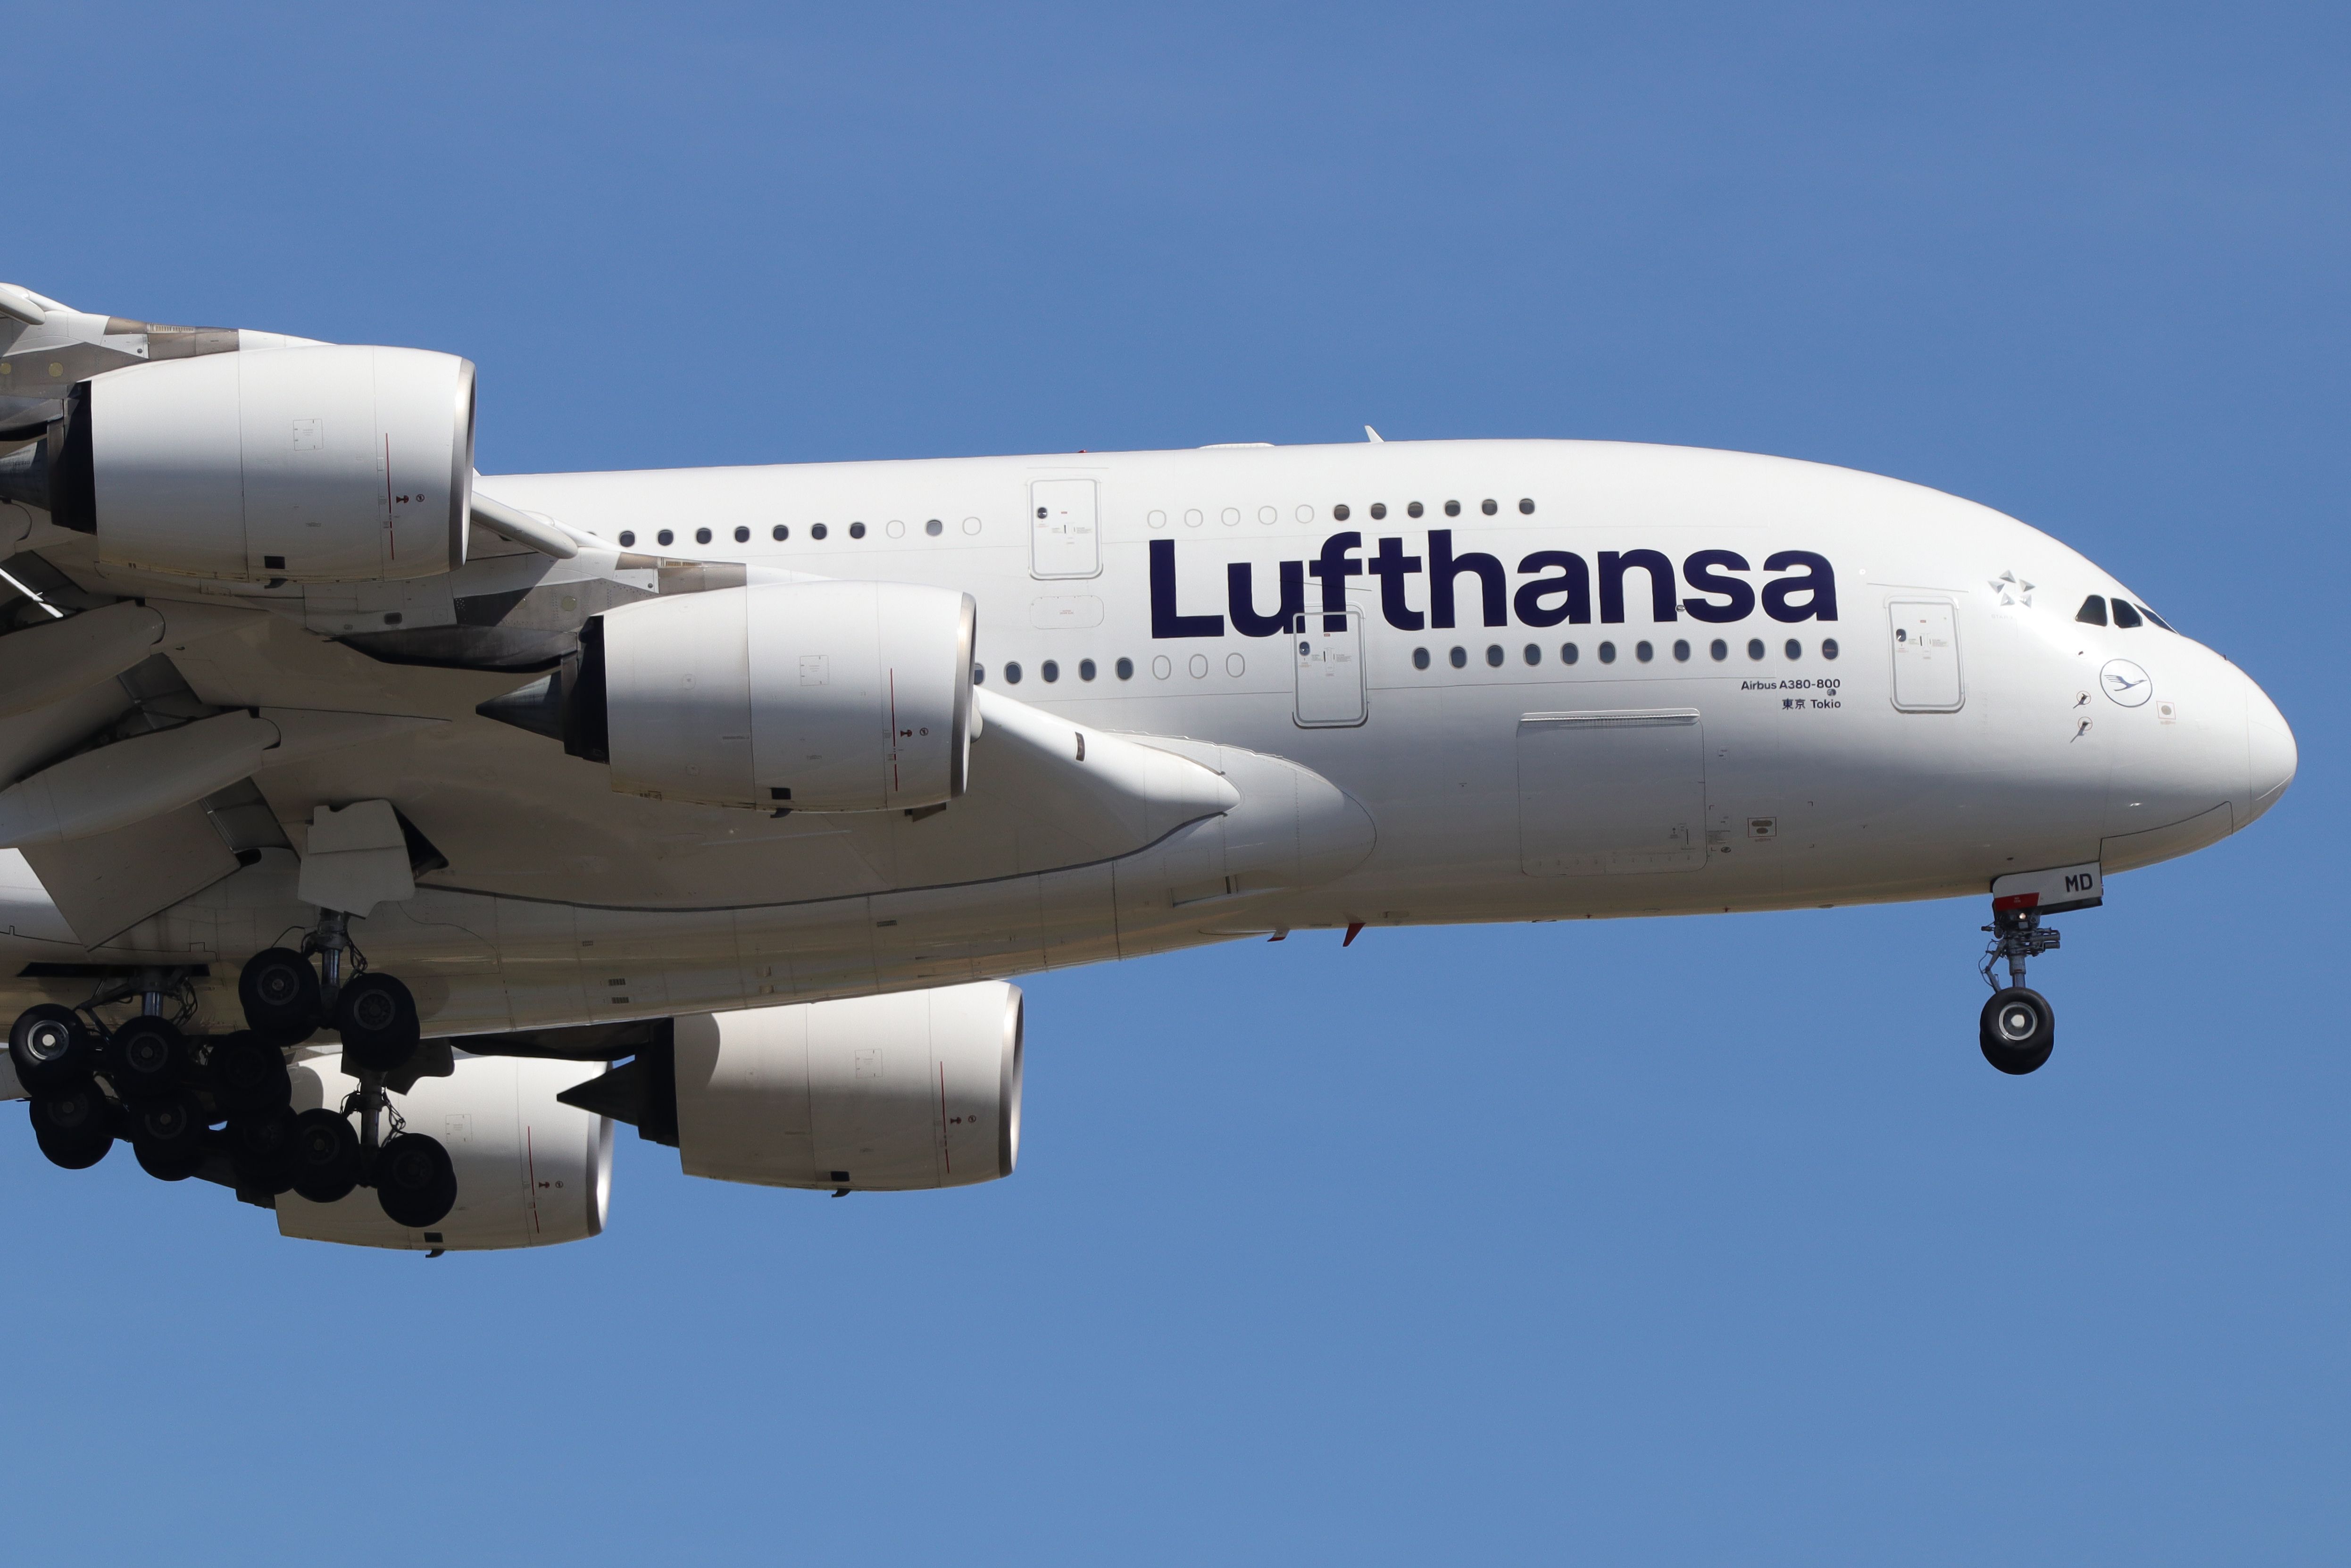 Lufthansa Airbus A380 on final approach shutterstock_1663002682